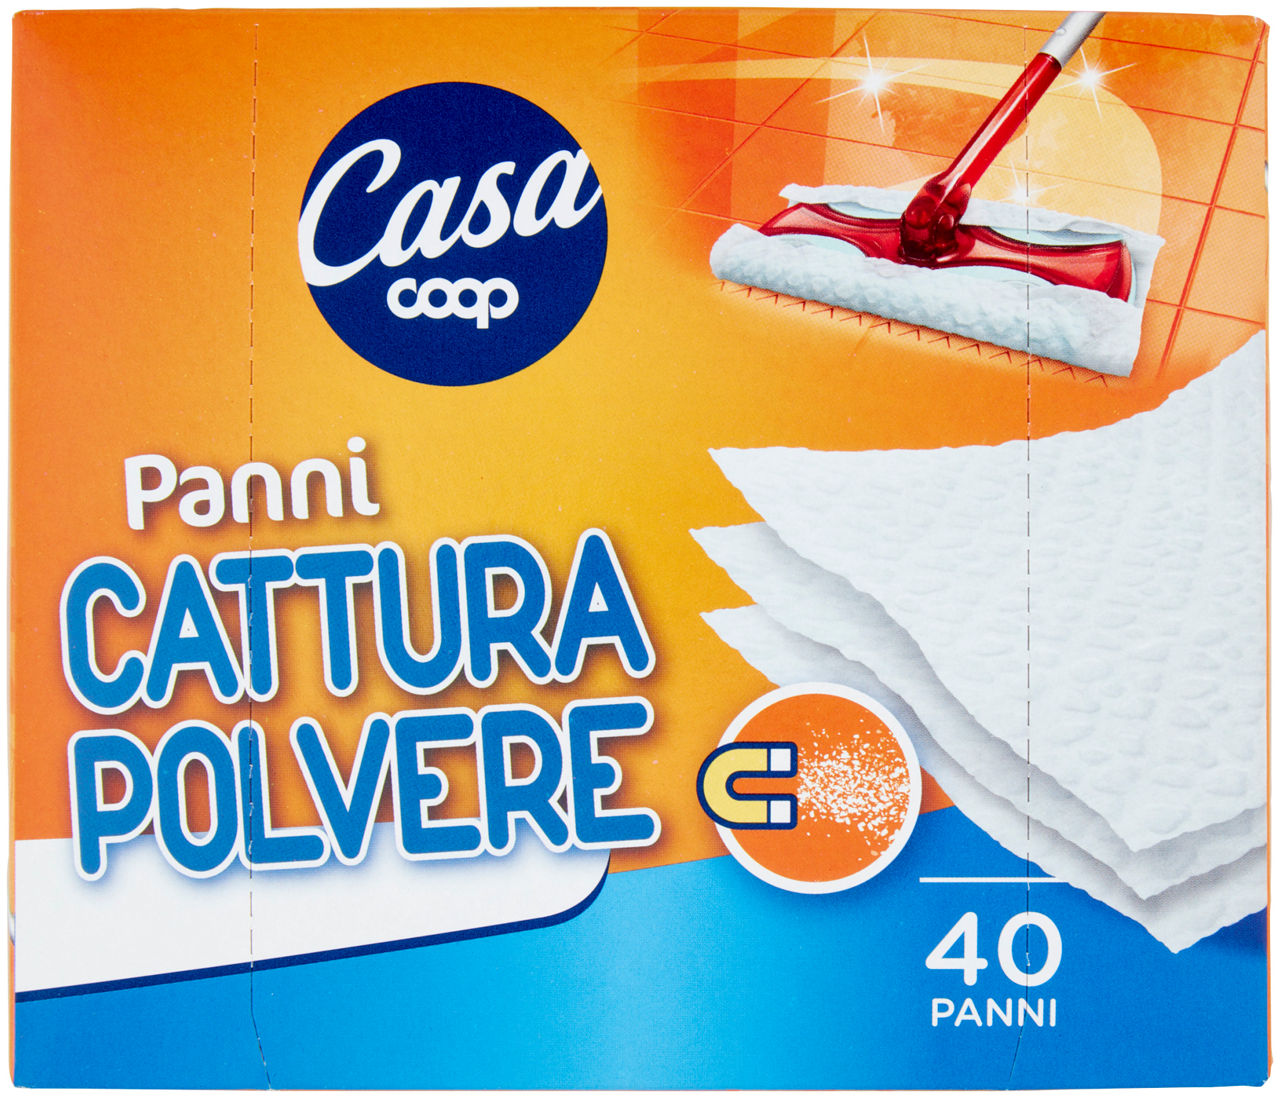 PANNI CATTURA POLVERE COOP CASA PZ.40 - 4